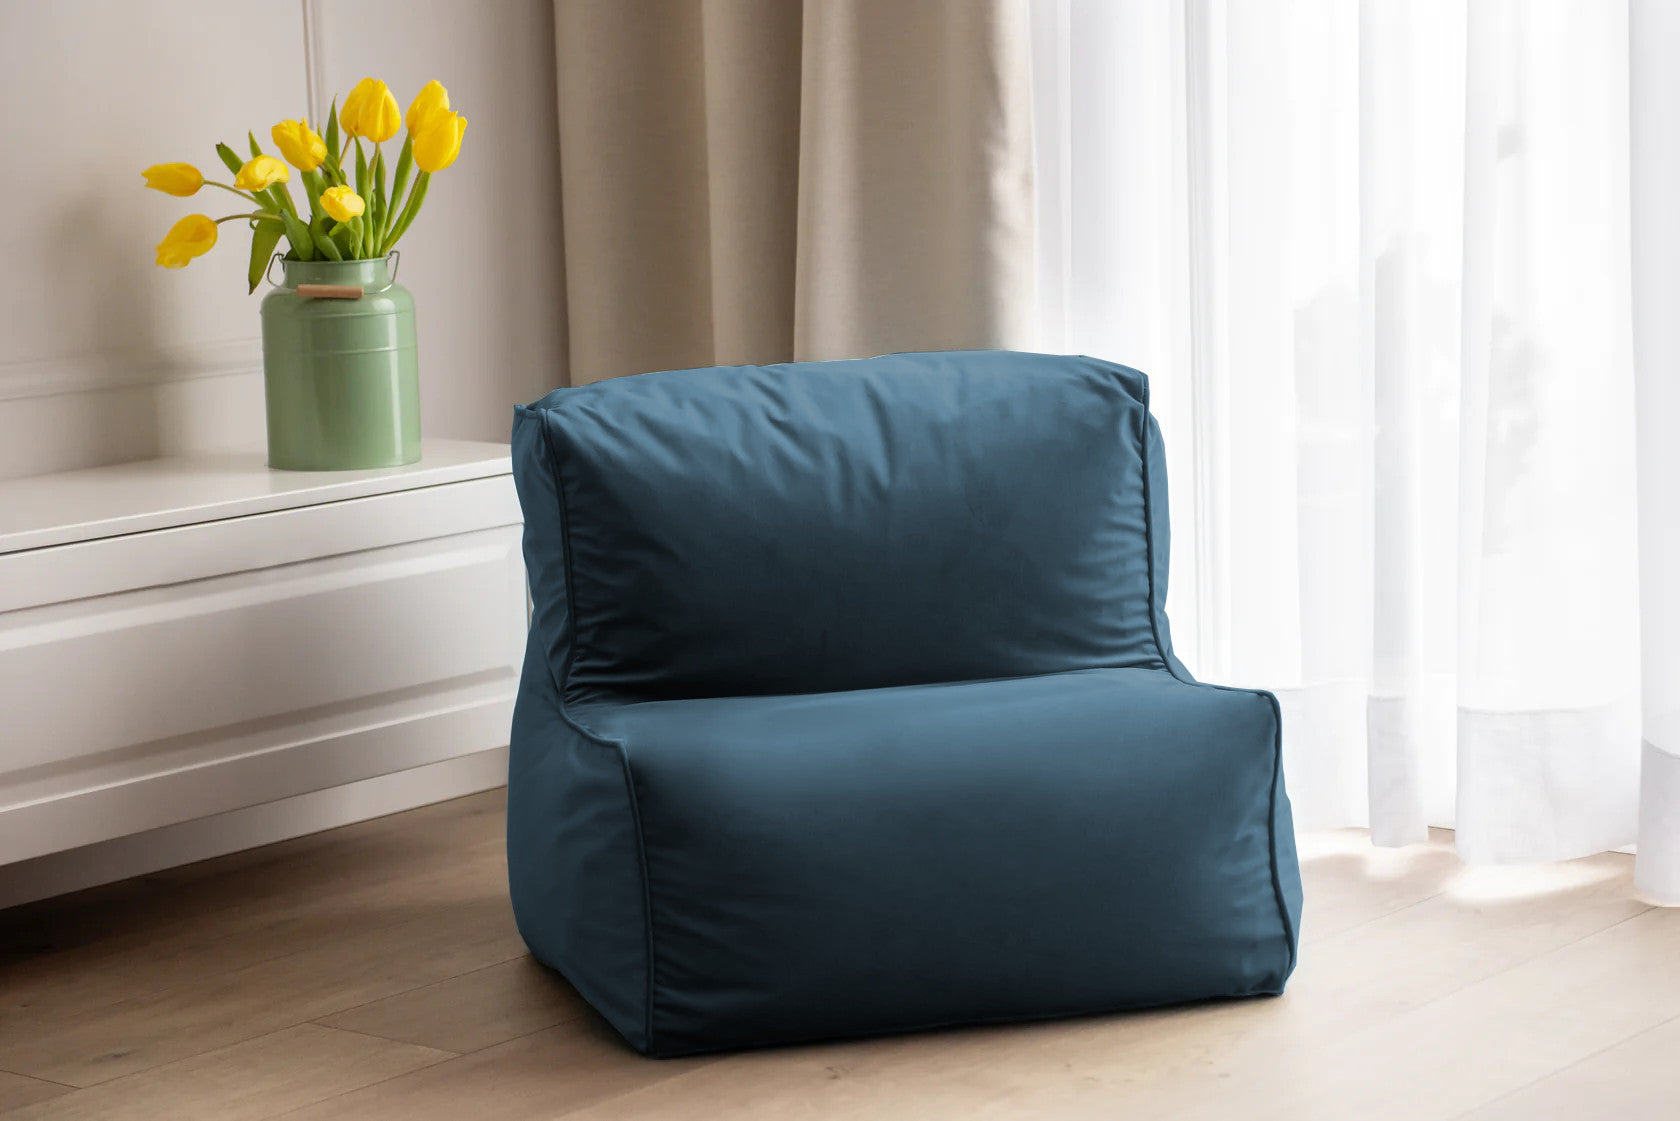 Modułowy Fotel Pufa ELKA Velvet - Aksamitny Komfort i Estetyka, Idealny Beanbag Worek do Siedzenia do Każdego Wnętrza, Dostępny w Różnych Kolorach